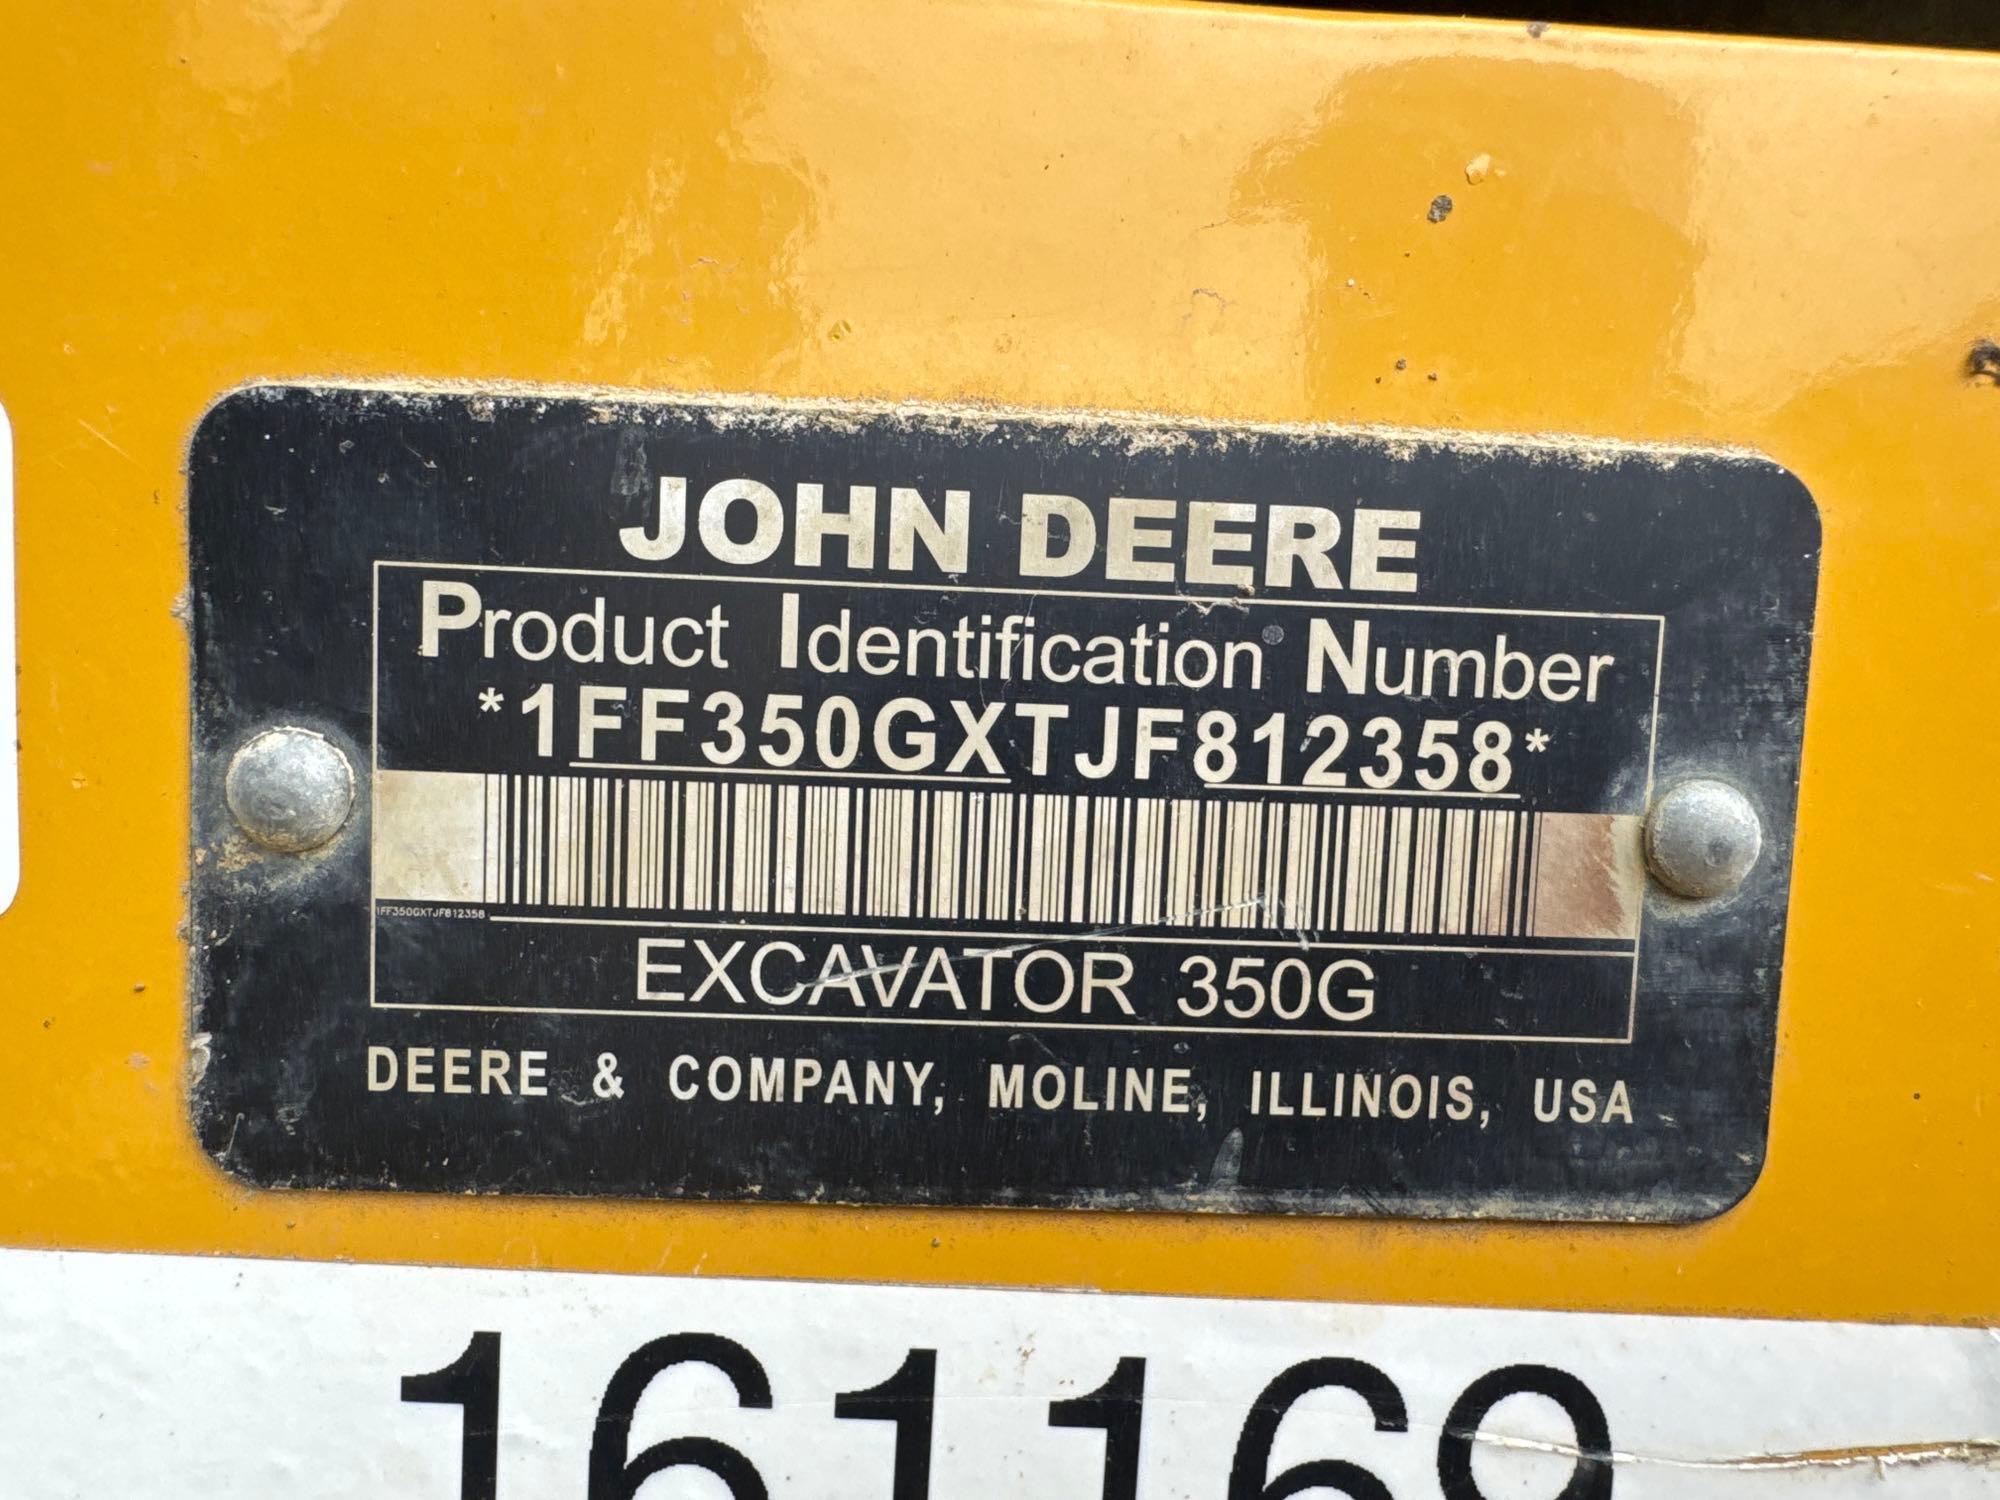 2018 JOHN DEERE 350GLC HYDRAULIC EXCAVATOR. SN: 812358...powered by John Deere diesel engine, equipp